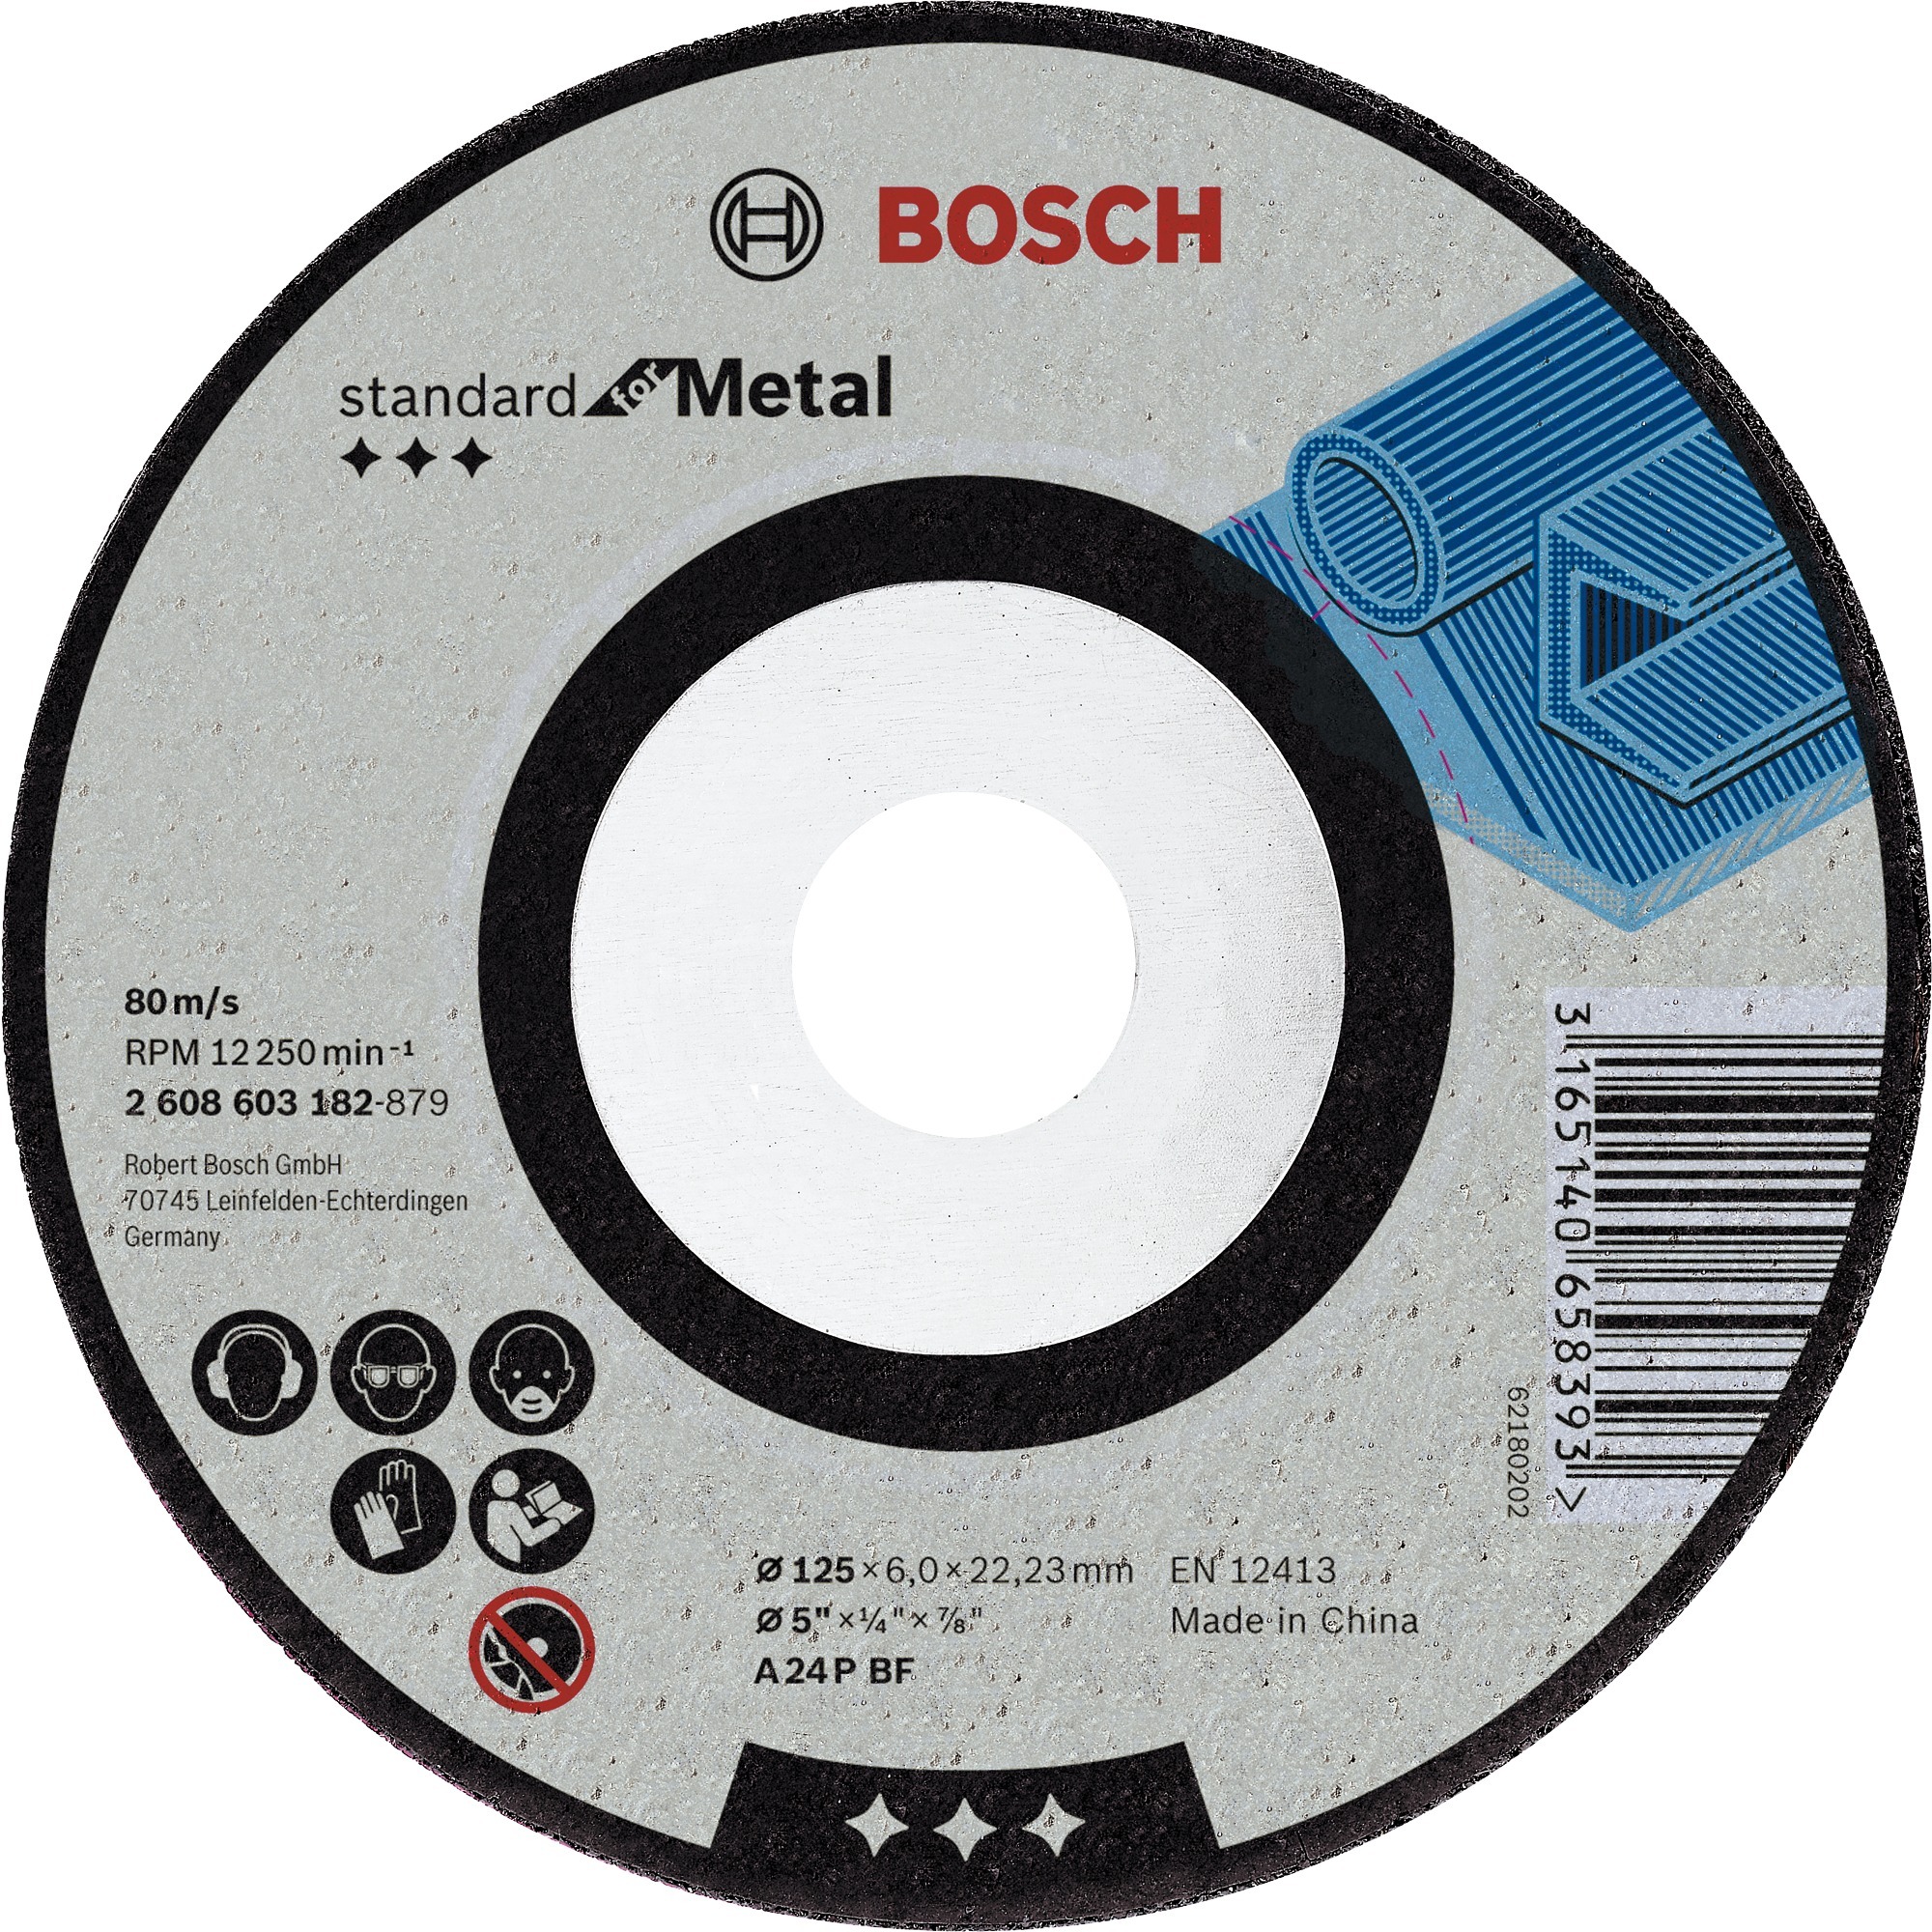 Image of Alternate - Schruppscheibe Standard for Metal, 115mm, Schleifscheibe online einkaufen bei Alternate